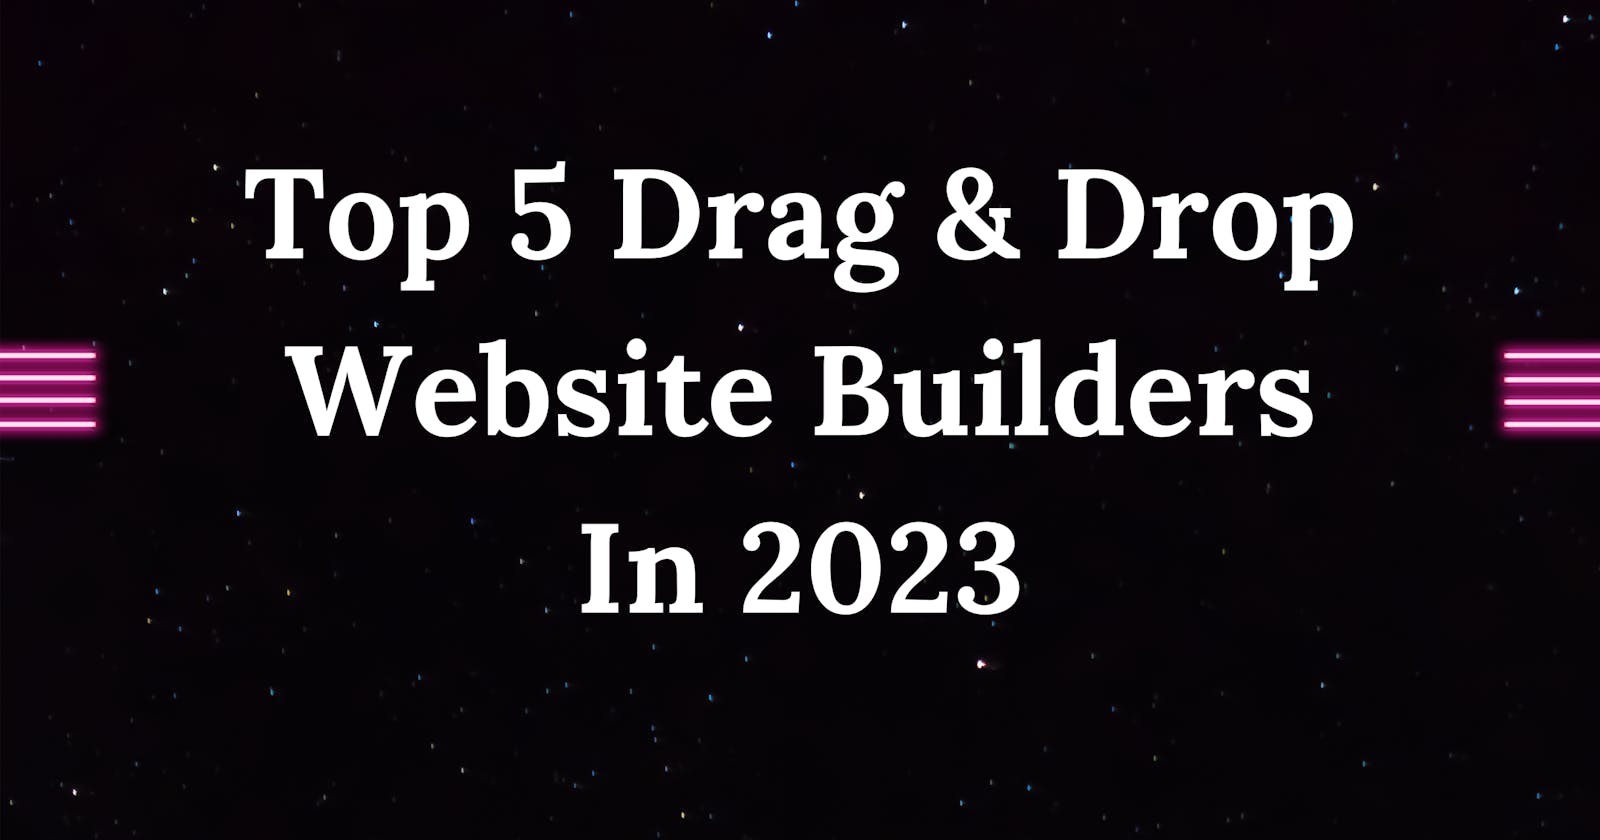 Top 5 Drag & Drop Website Builders In 2023